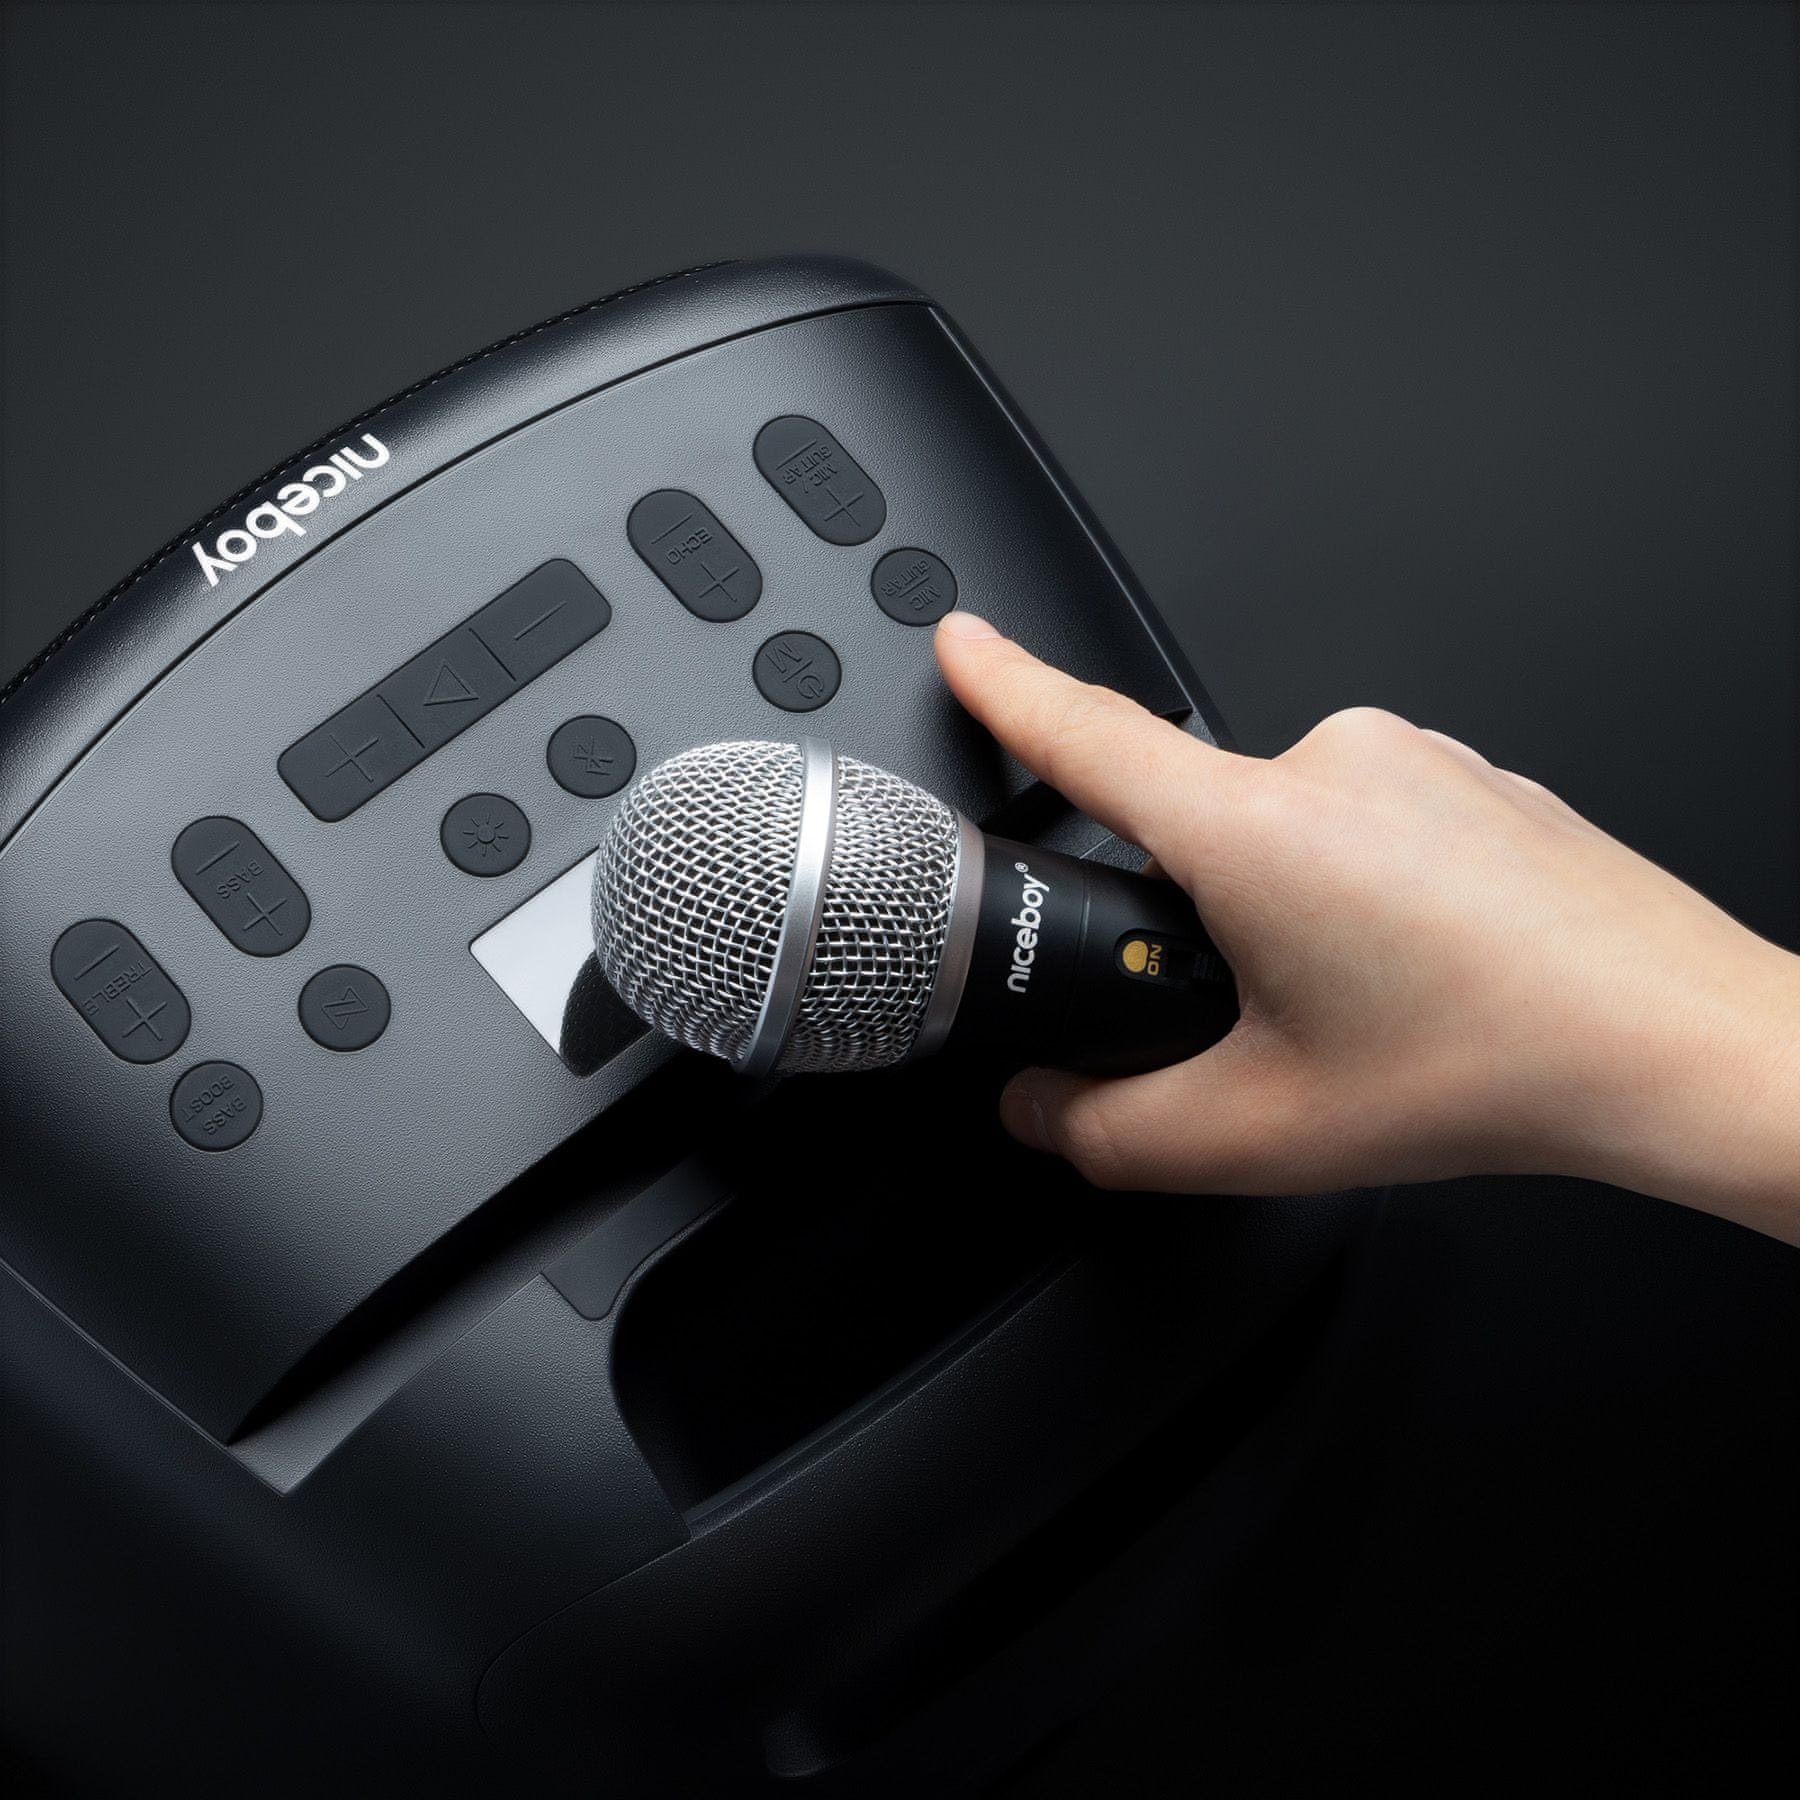 Bluetooth zvočnik za zabavo Niceboy party boy 2 100W maxxbass tehnologija ipx4 vodoodpornost svetlobni učinki karaoke možnost priključitve glasbila trajanje baterije 20 h ob polnjenju predvajanje prek USB microSD kartice aux in gumb za povečanje basov mikrofon za več seans v paketu